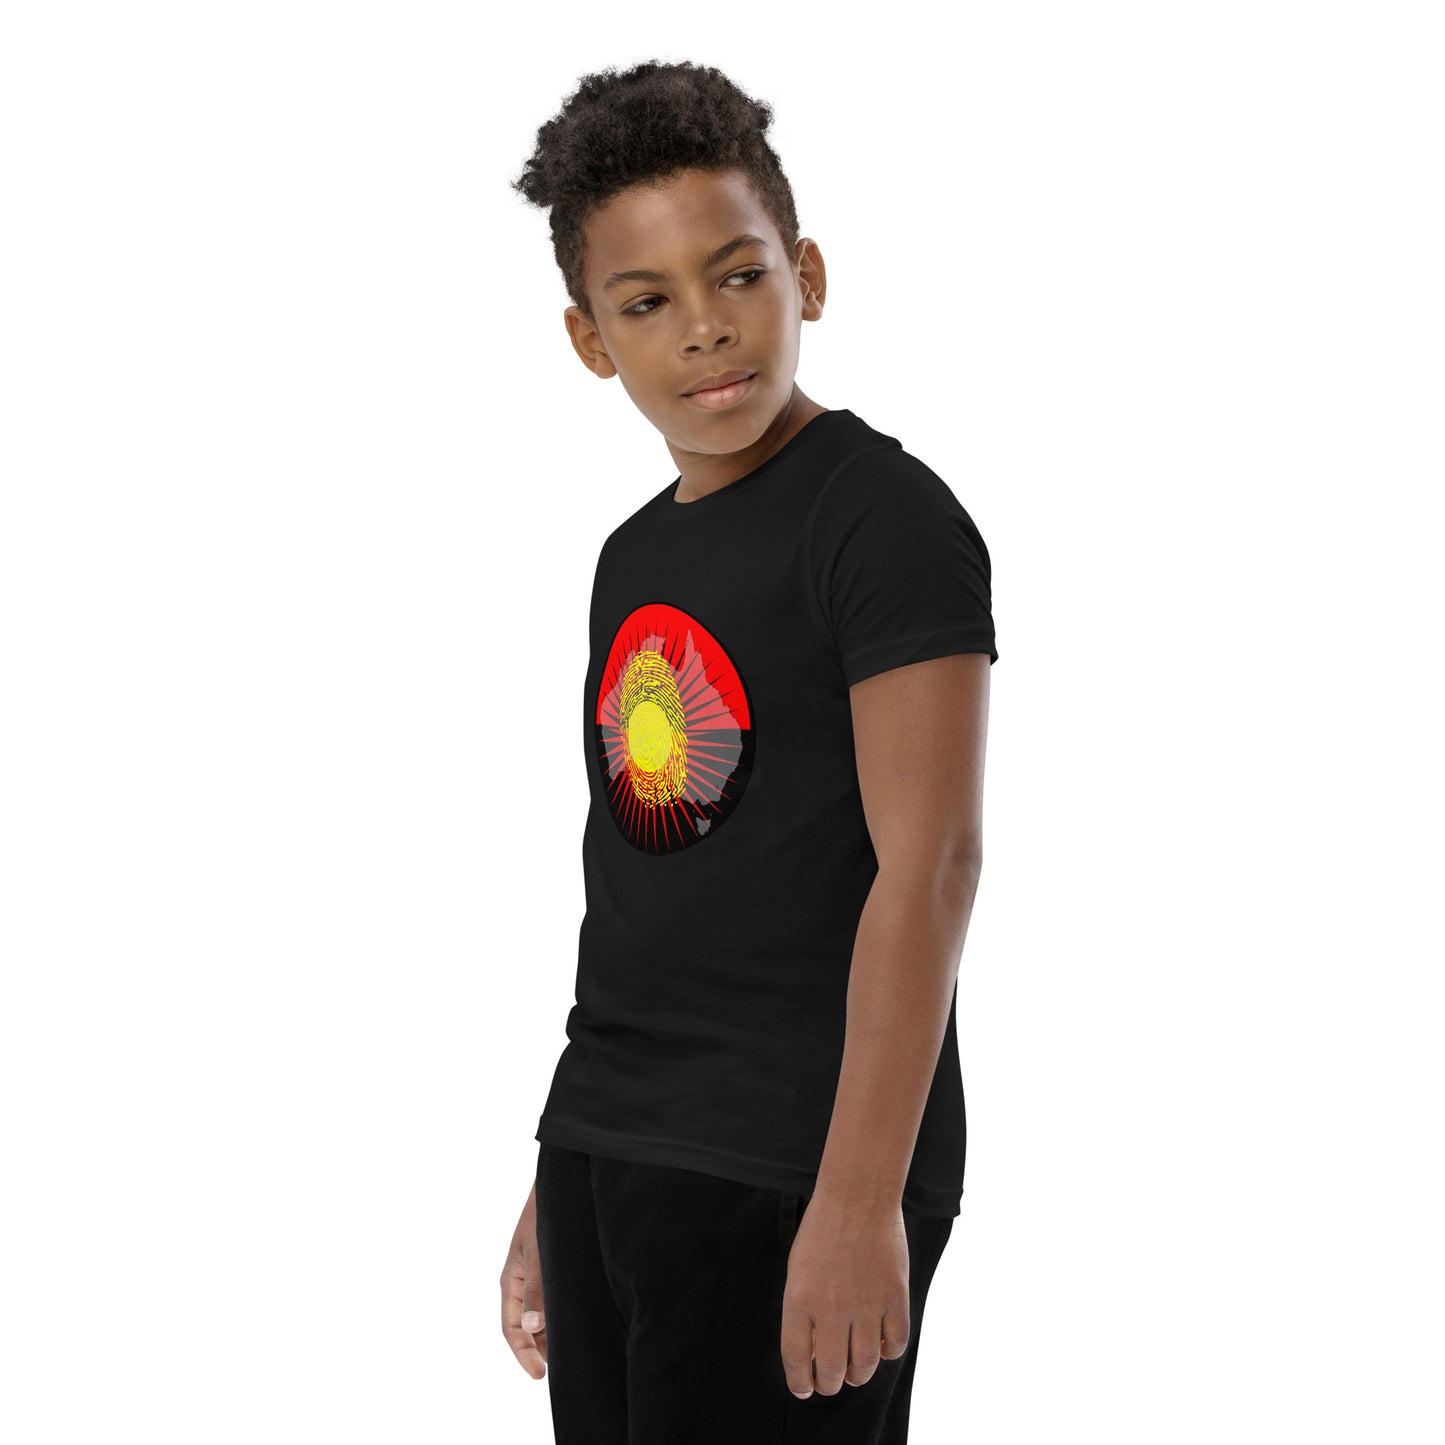 Aboriginal Australia Identity Youth Unisex Short Sleeve T-Shirt